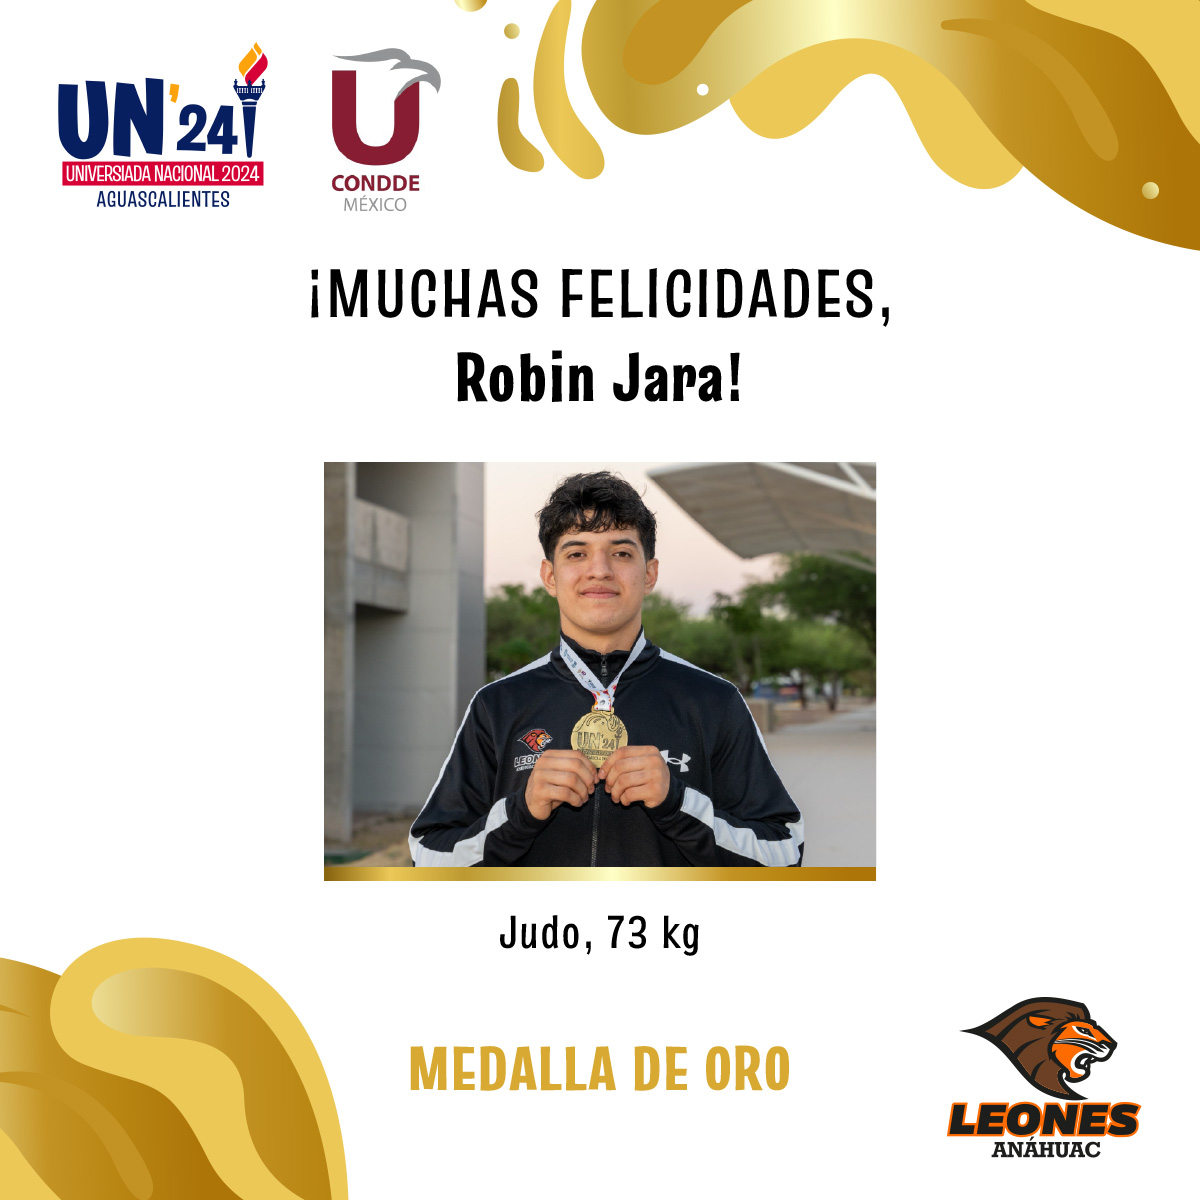 #VamosLeones Gracias a su energía, pasión y compromiso durante la #UniversiadaNacional2024, Robin Jara ganó la medalla de oro en Judo, categoría open 🥋🥇👏🏼 ¡Muchas felicidades! 🦁🙌🏼 @UniversiadaMX @ConddeMx